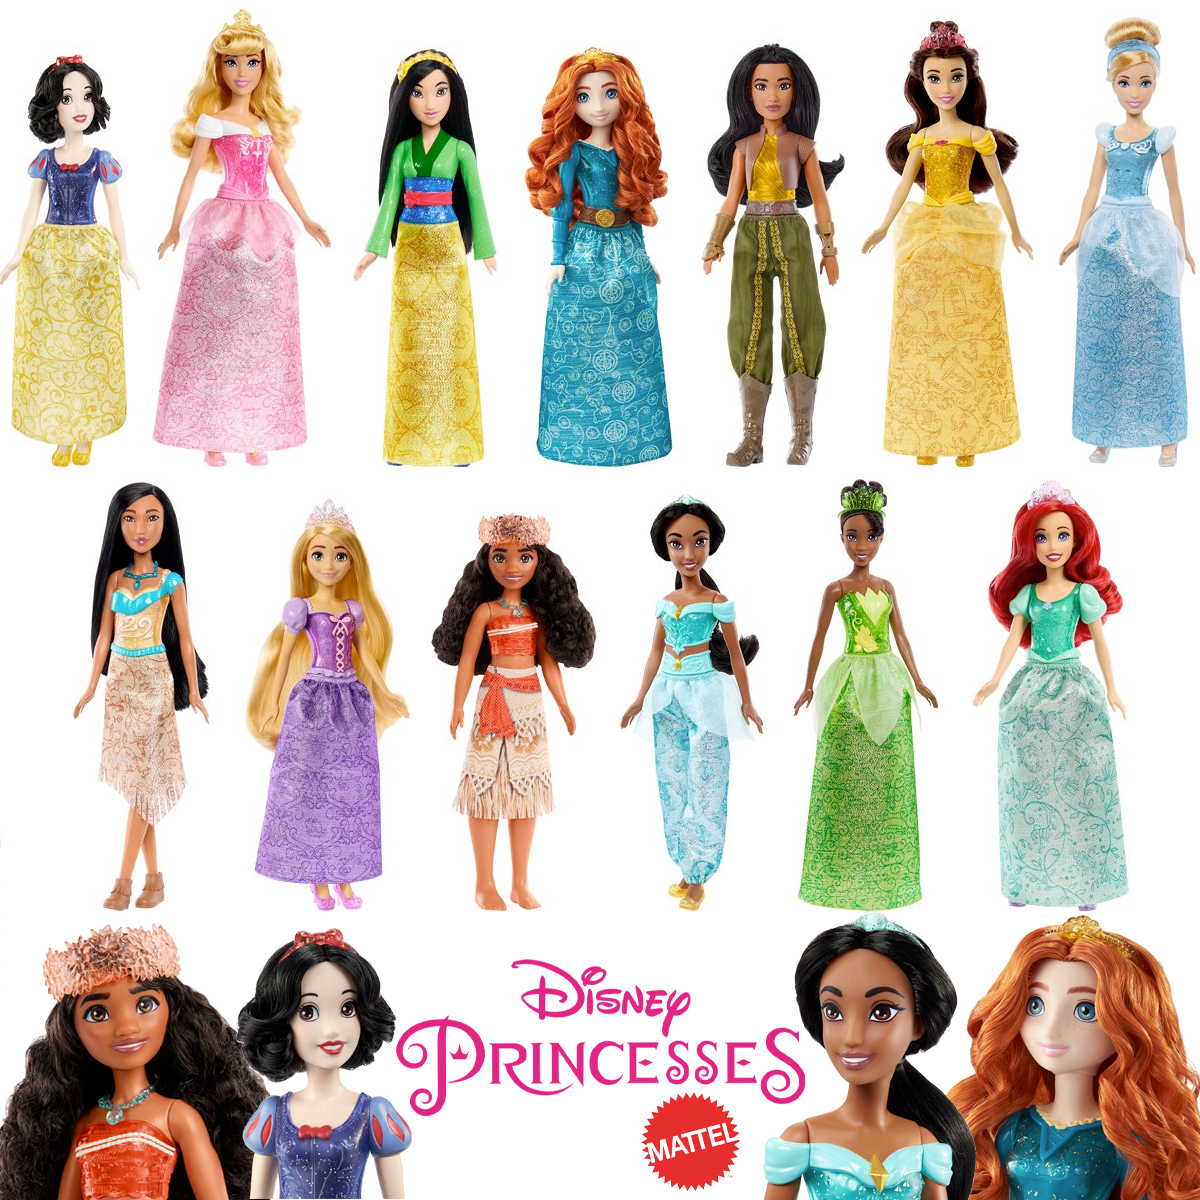 13 Bonecas Fashion Dolls das Princesas Disney com 28 cm (Mattel)